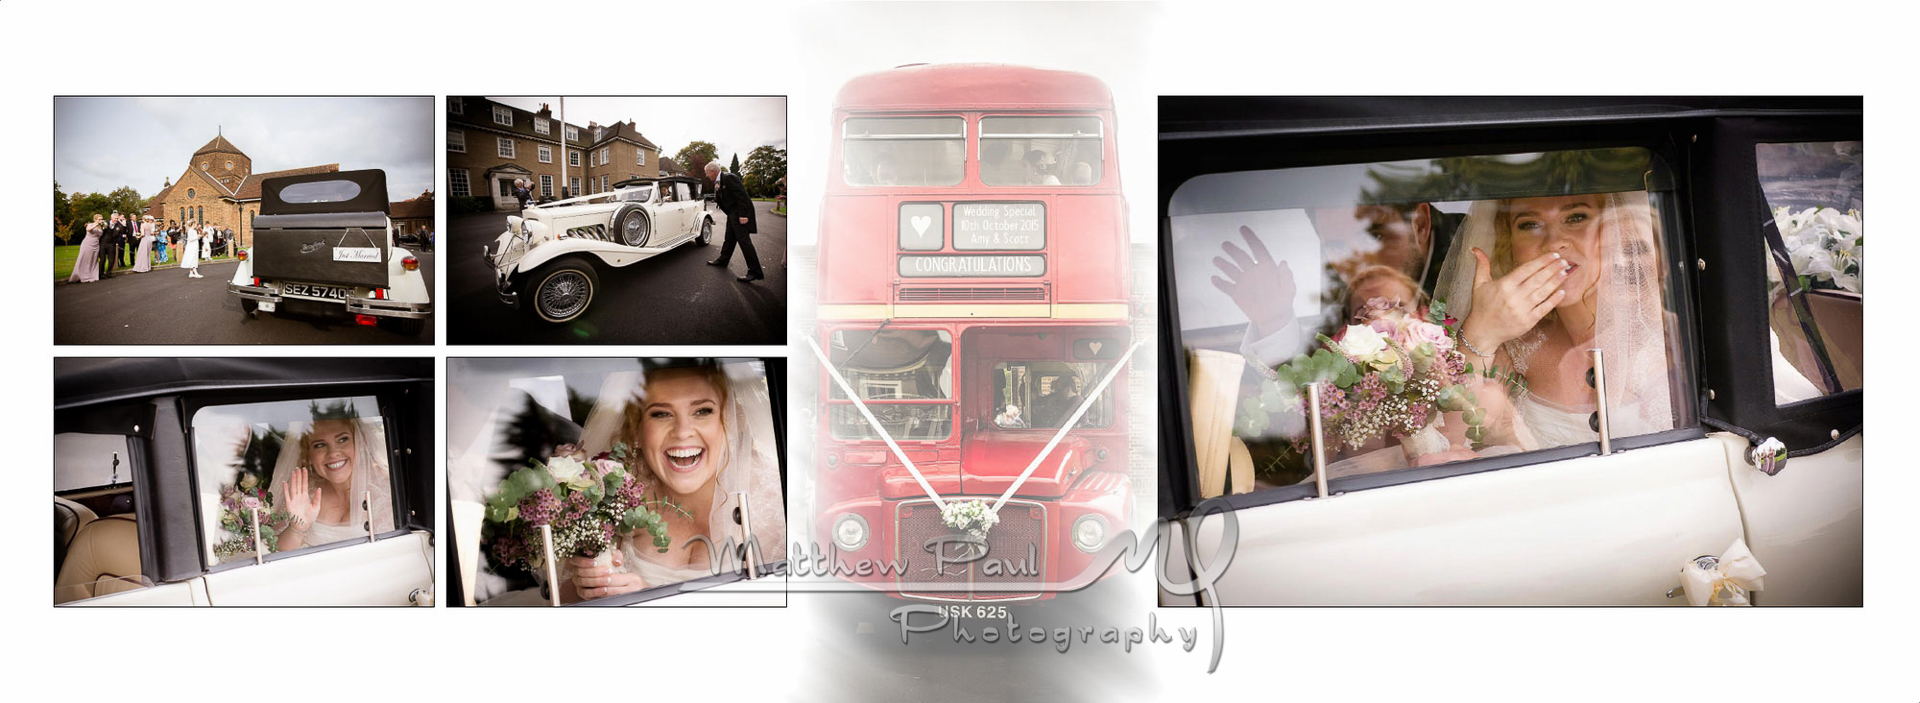 Wedding bus and wedding car